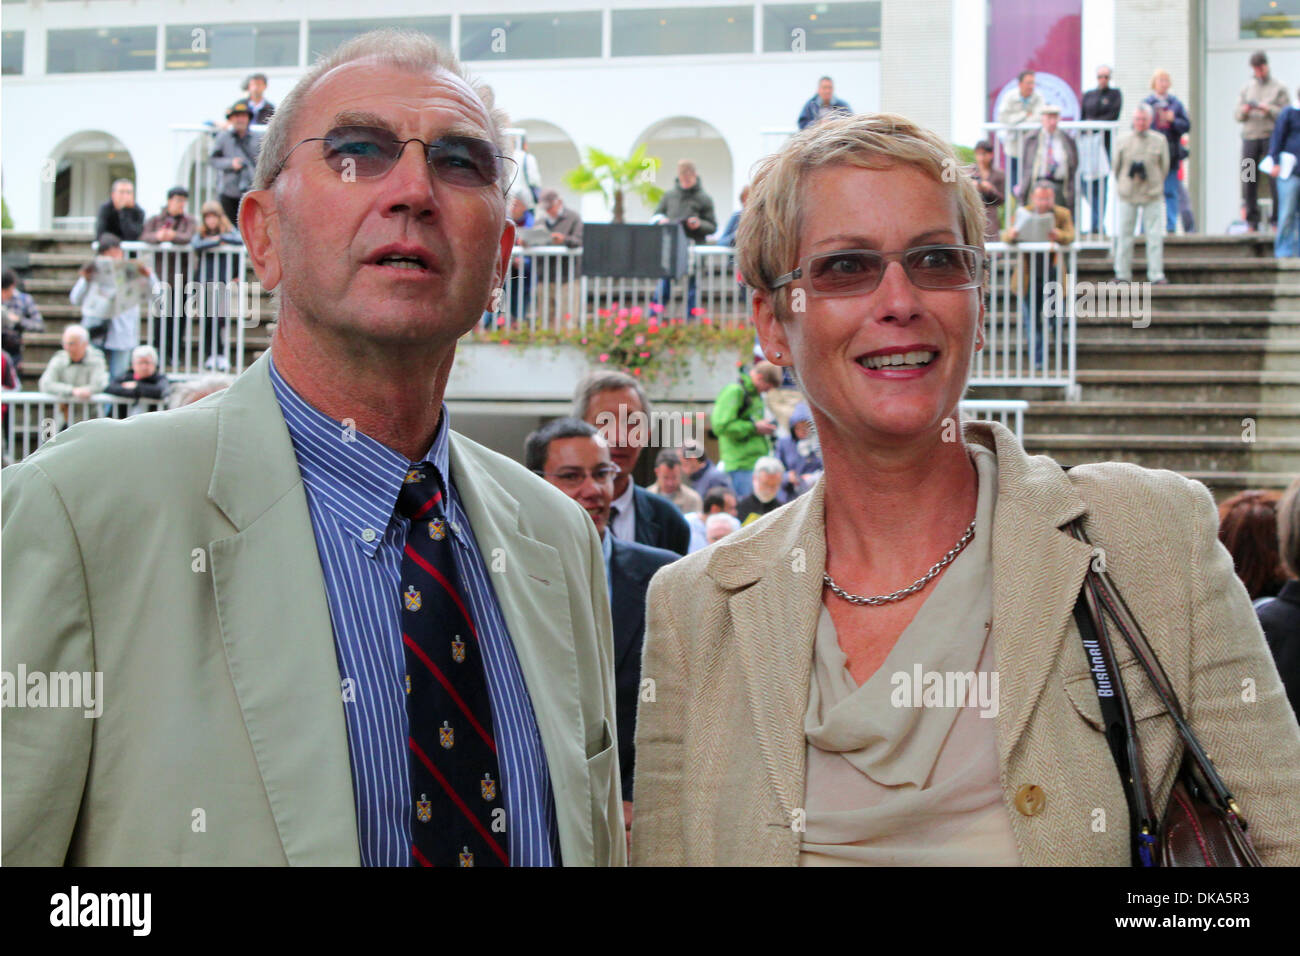 11 septembre 2011 - Paris, Ile de France, États-Unis - 11/09/2011, Carina  Klingberg et mari Sven Hanson, co-fondateur de la Pride rAcing Club,  co-propriétaires de l'homme fiable gagnant de la course le